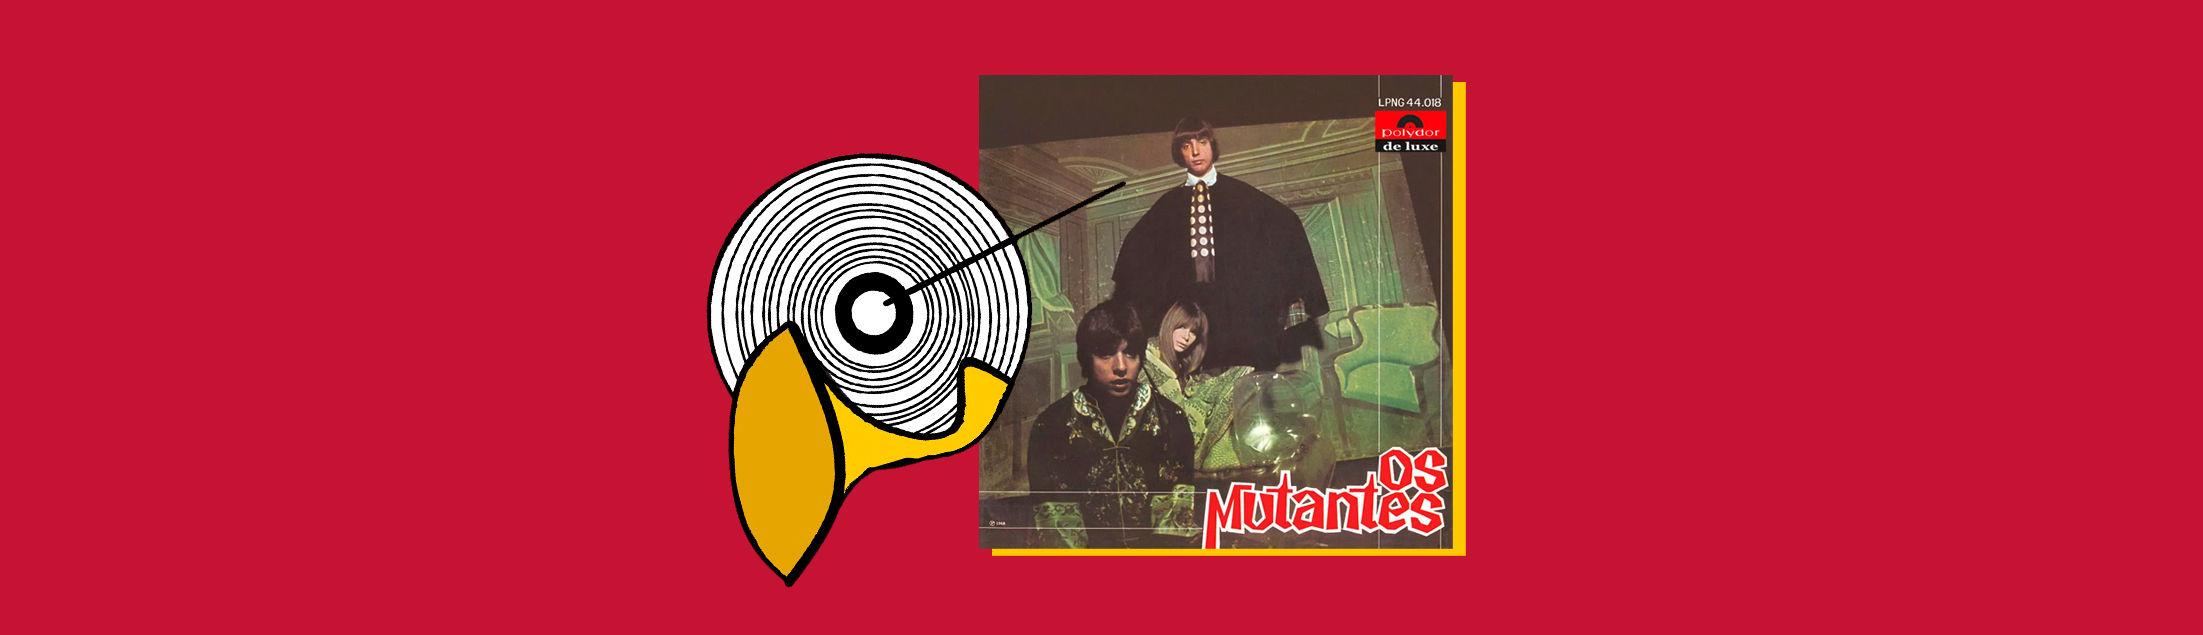 Canal 'Na Ponta do Disco' analisa o álbum de estreia dos Mutantes